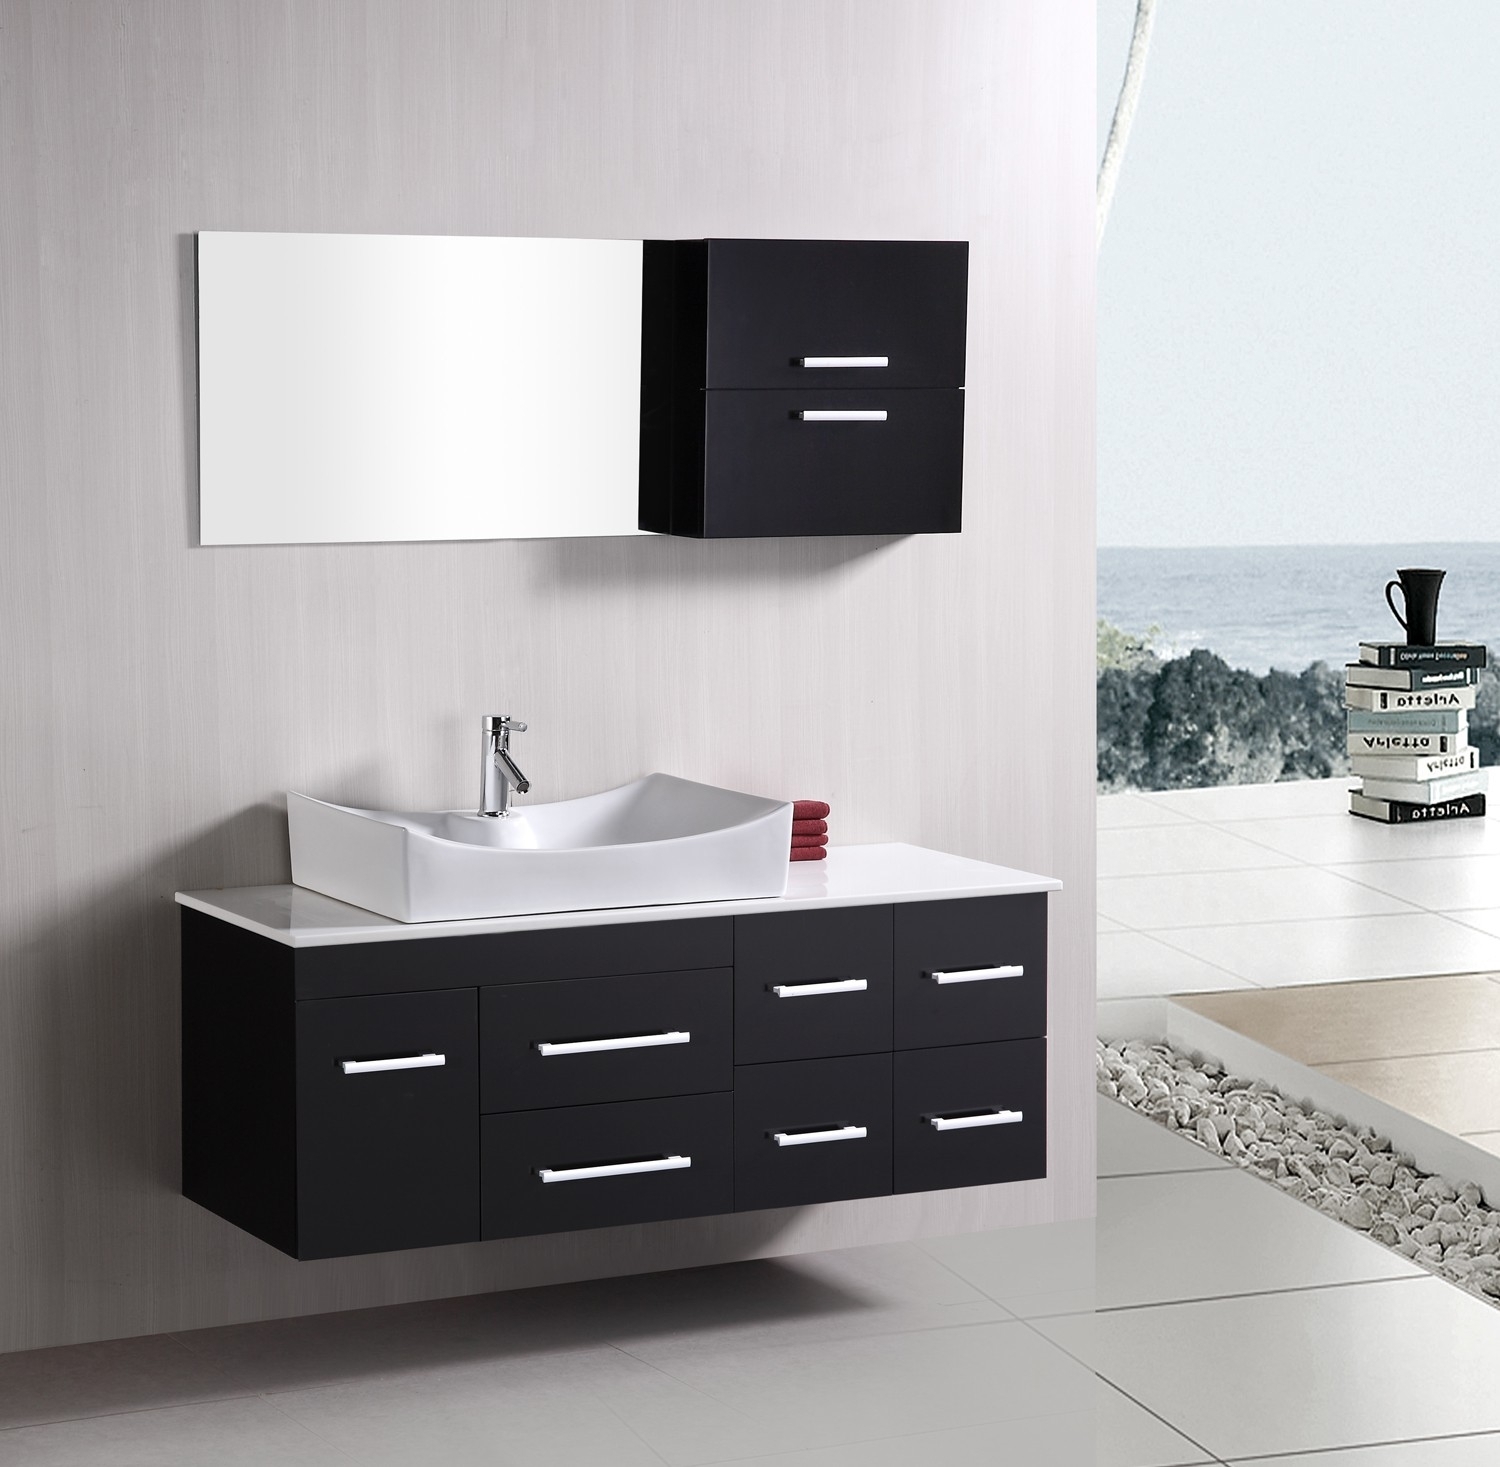 Bathroom Vanity Designs Images